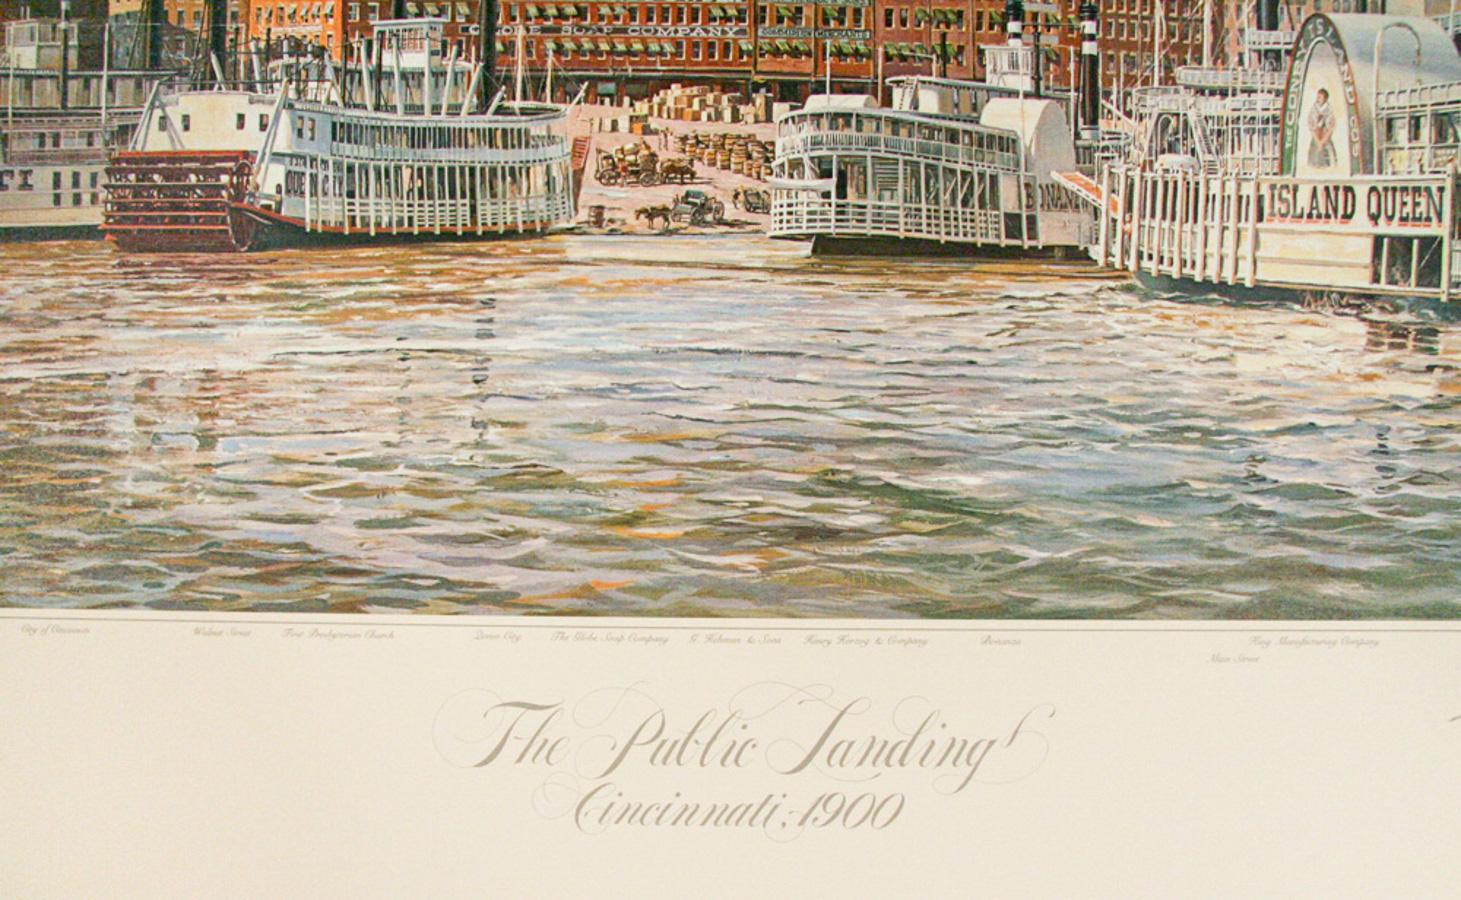 1989 Lithographie d'après une peinture de Michael Blaser, artiste marin américain spécialisé dans les bateaux à vapeur historiques et contemporains et les navires des Grands Lacs. Il a peint toutes les grandes villes fluviales, de St. Paul à la